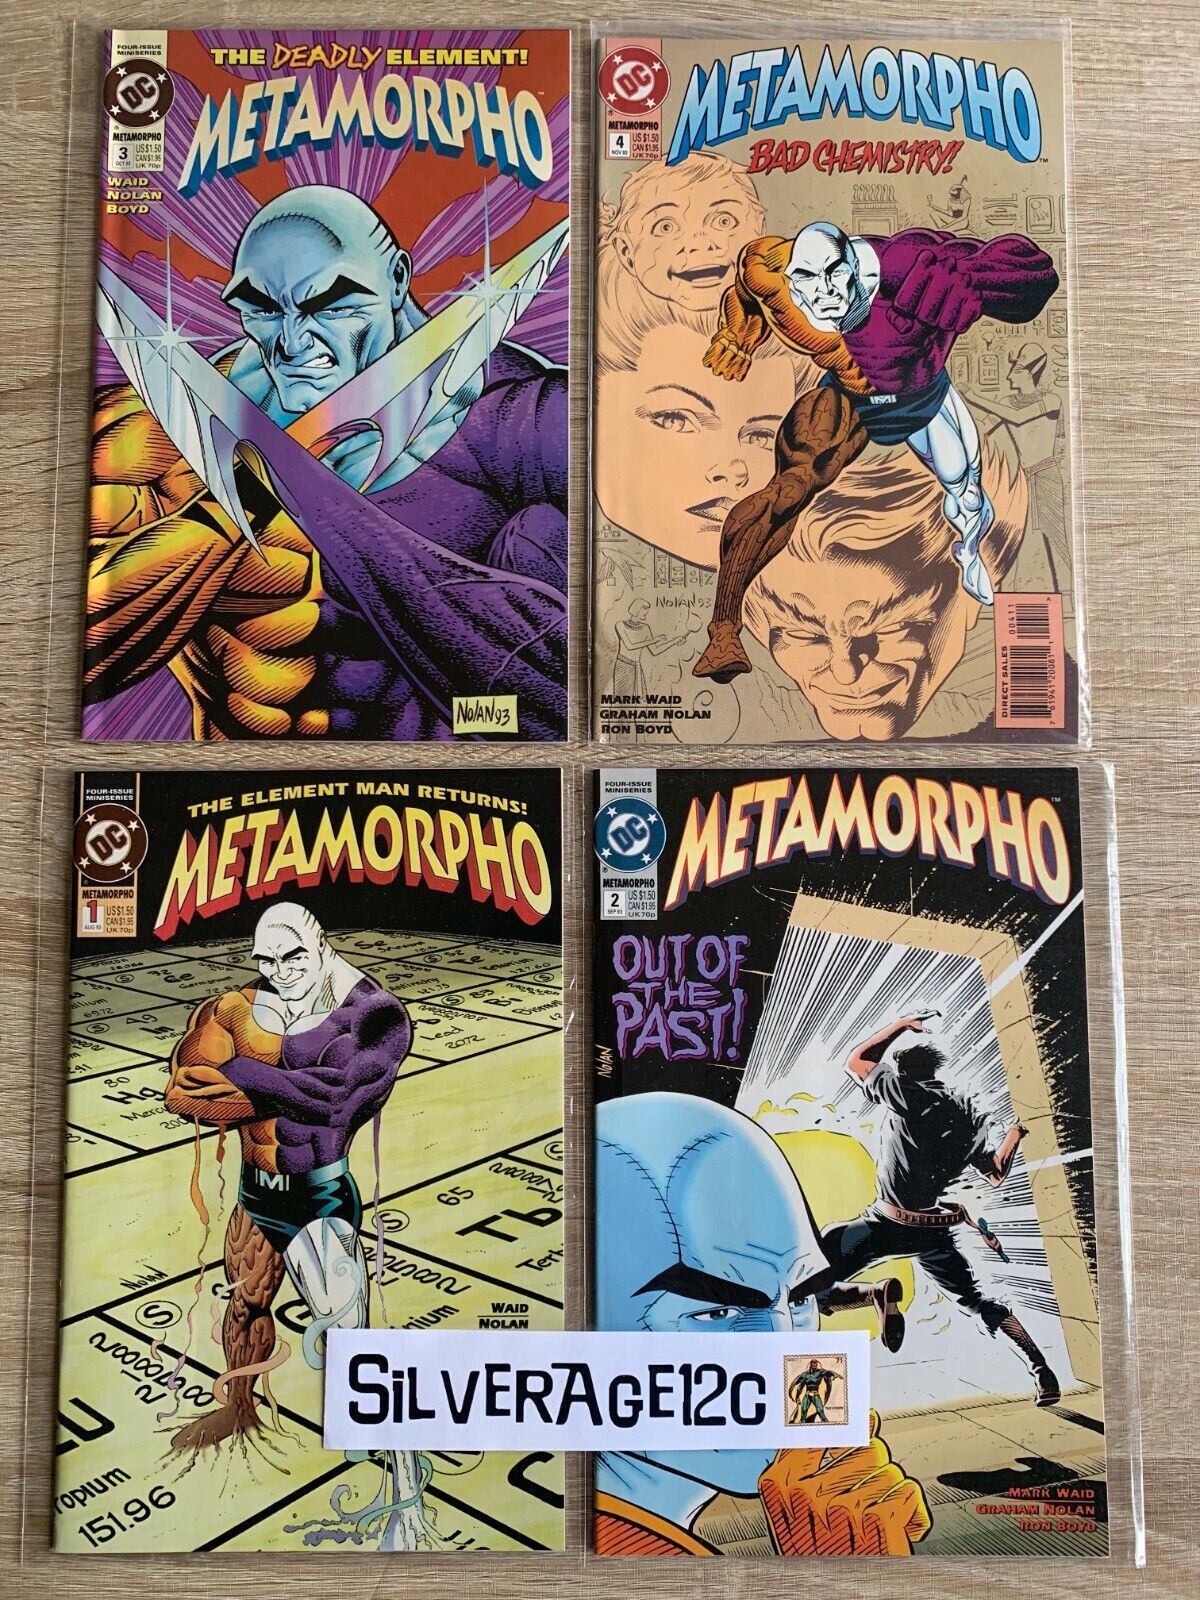 Metamorpho #1 - #4 COMPLETE Series Run of 4 in High-Grade (1993)